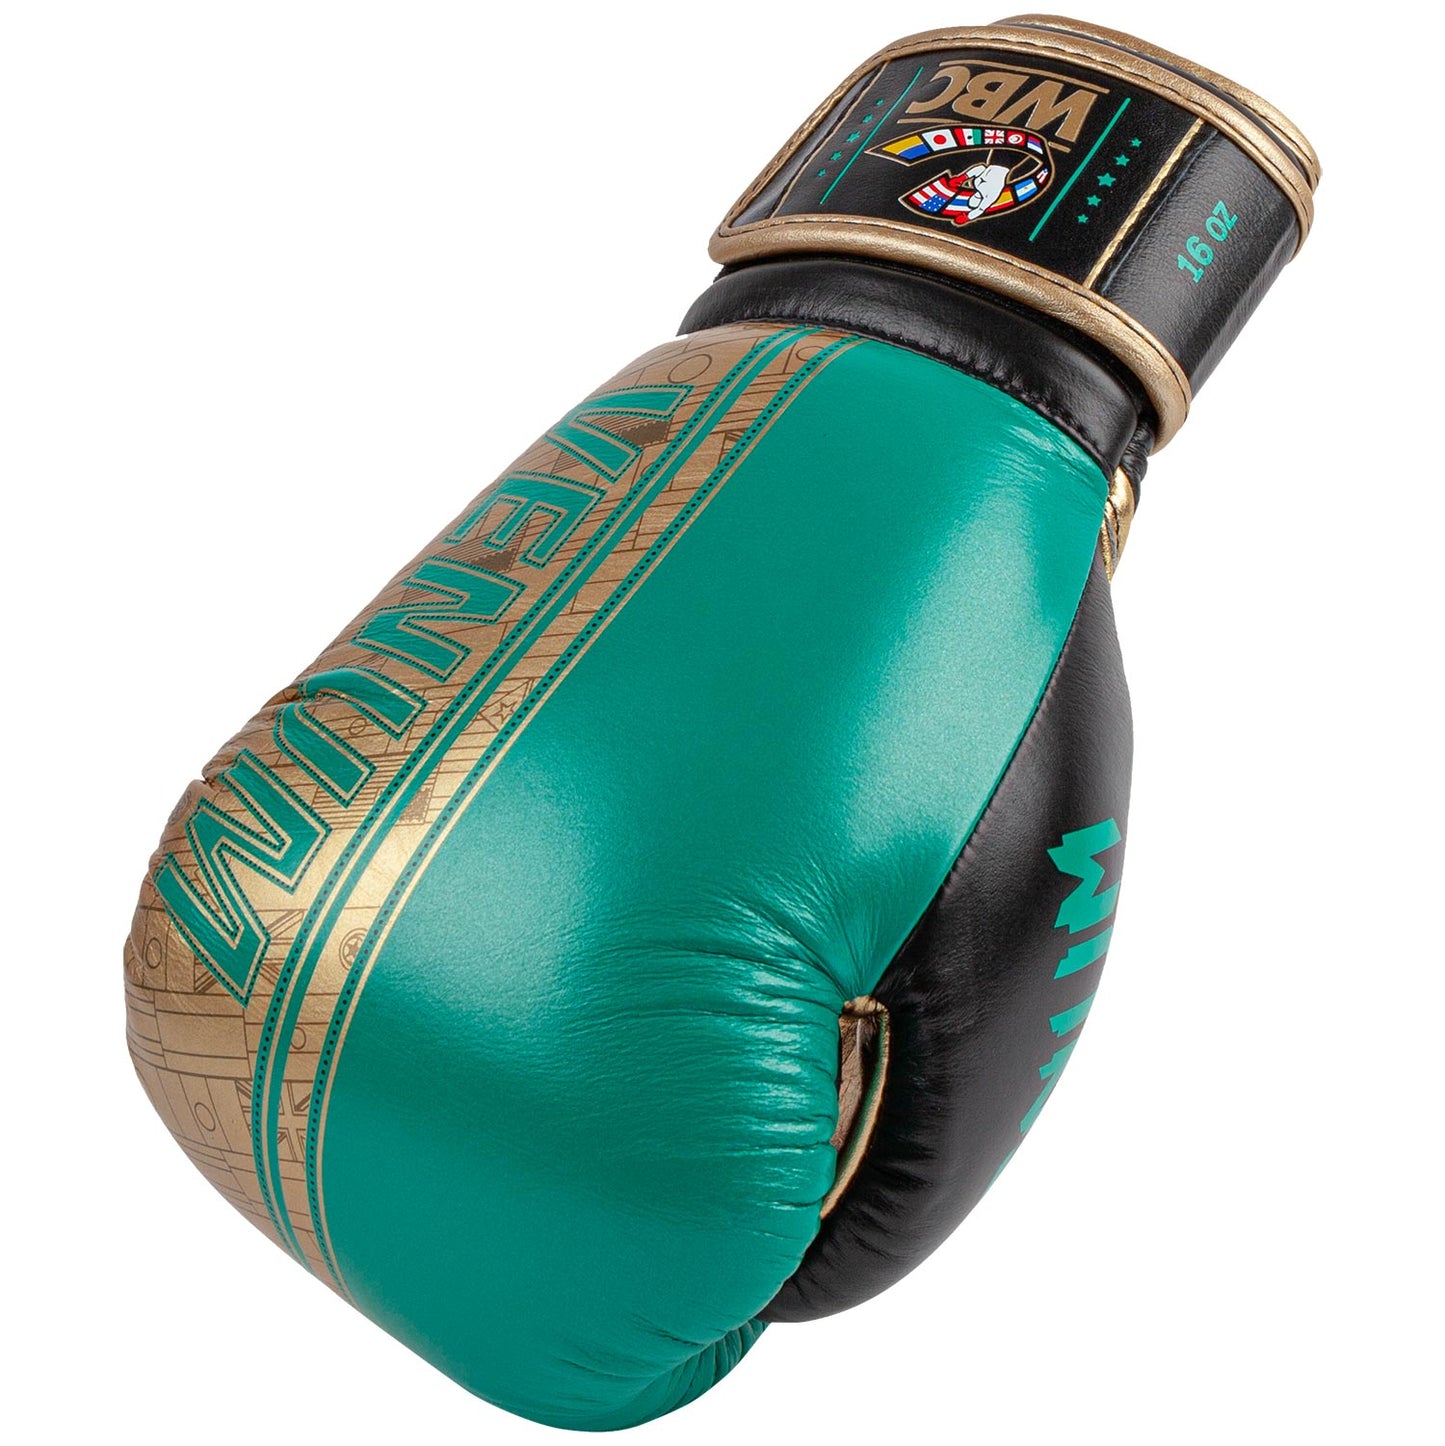 Guantes de Boxeo profesional Venum Shield - Edición limitada WBC - Velcro - Verde metálico/Oro